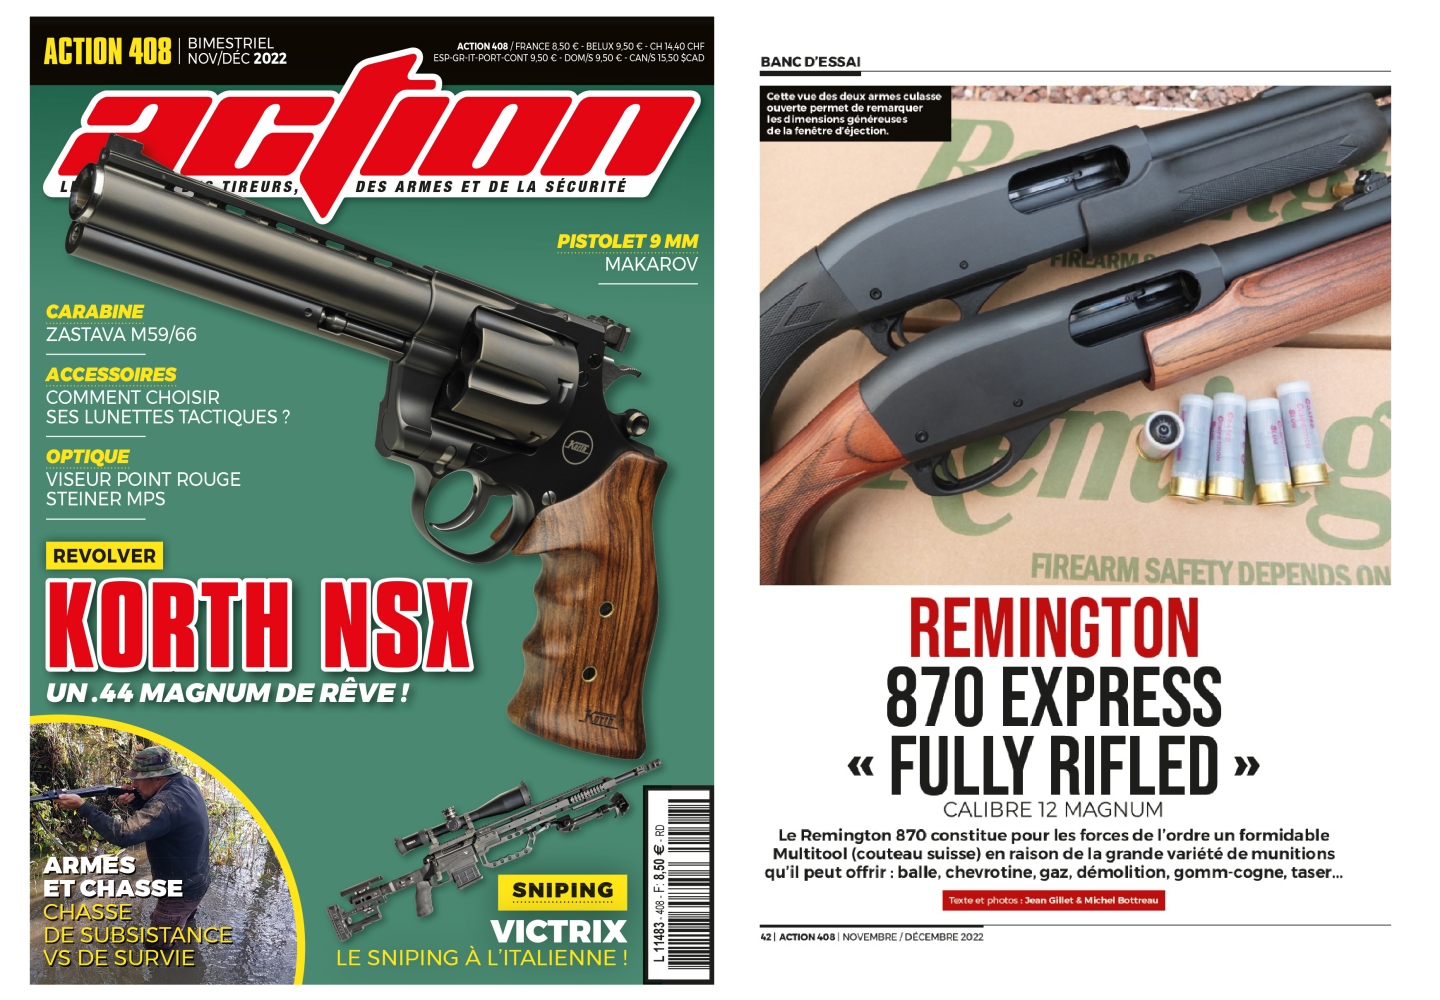 Le banc d’essai du fusil Remington modèle 870 Express a été publié sur 6 pages dans le magazine Action n°408 (novembre-décembre 2022).